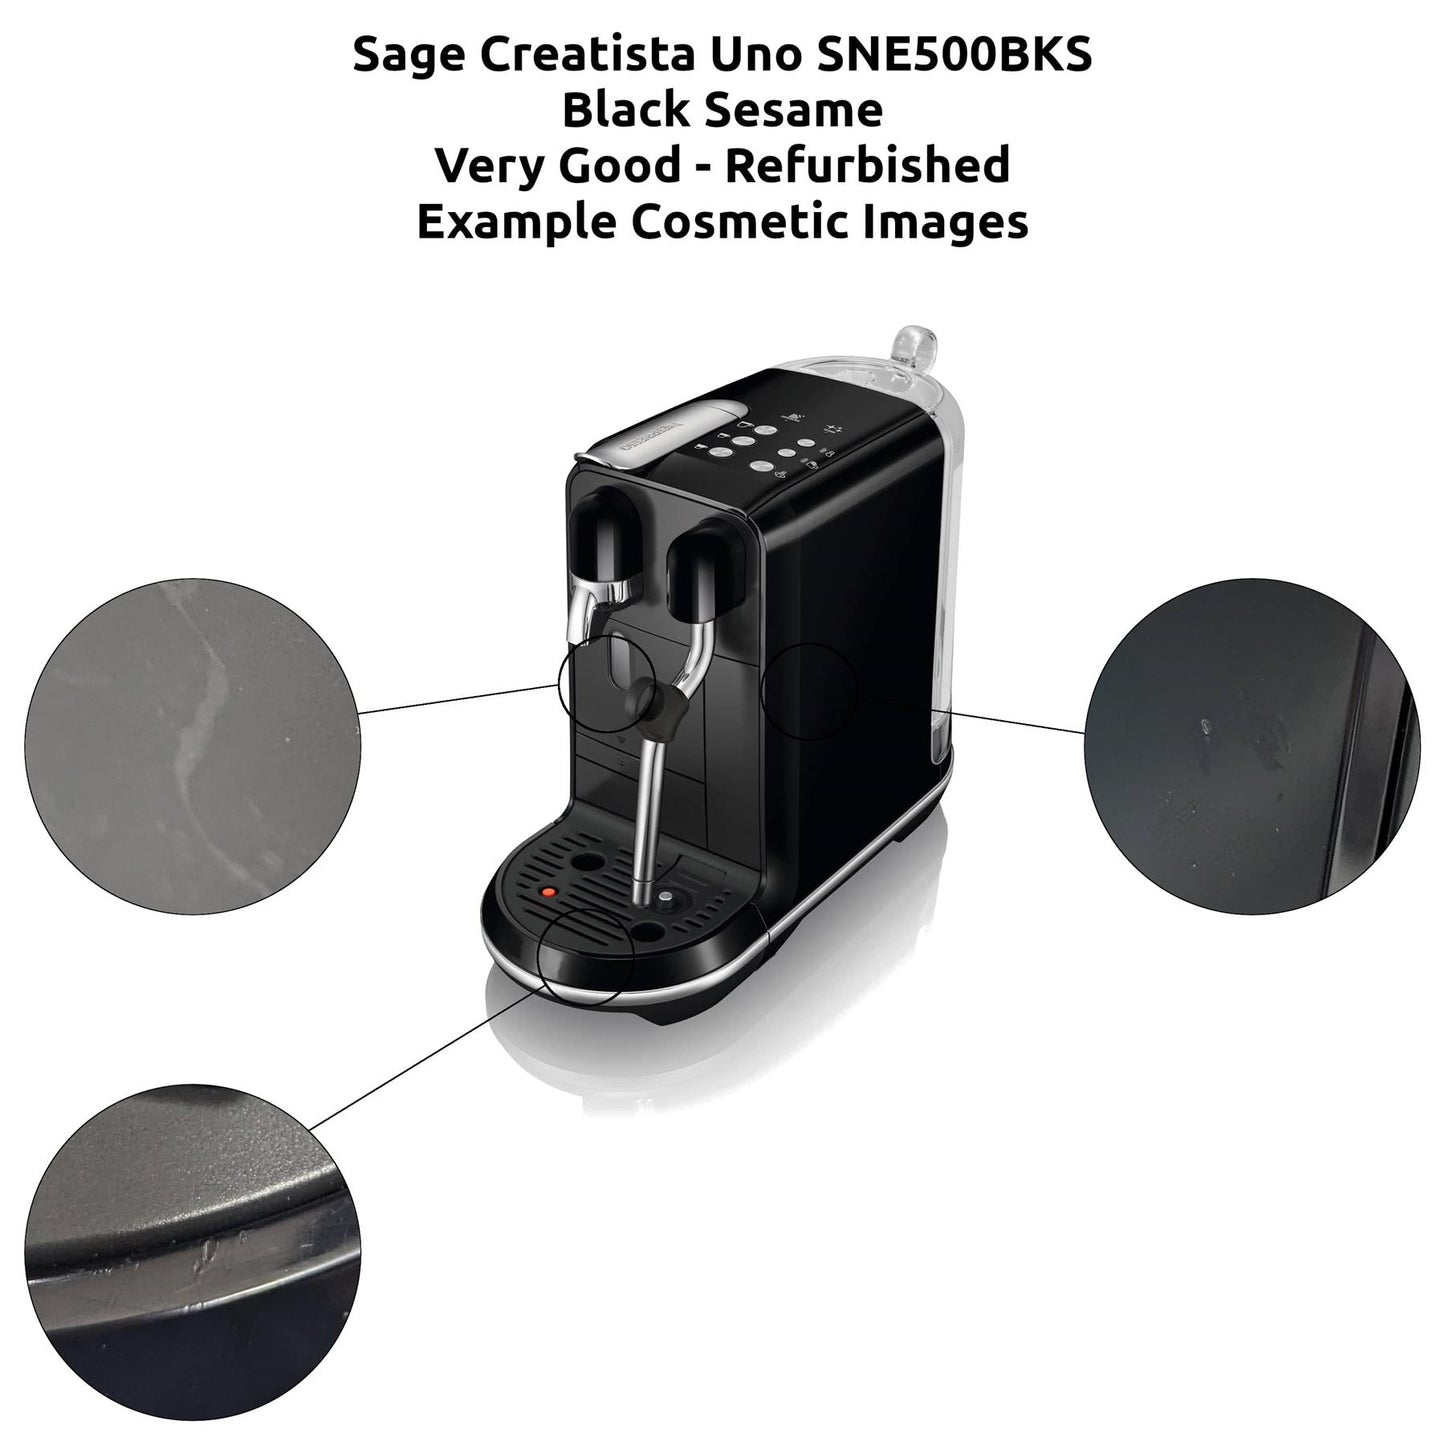 Sage The Nespresso Creatista Uno SNE500 Coffee Machine